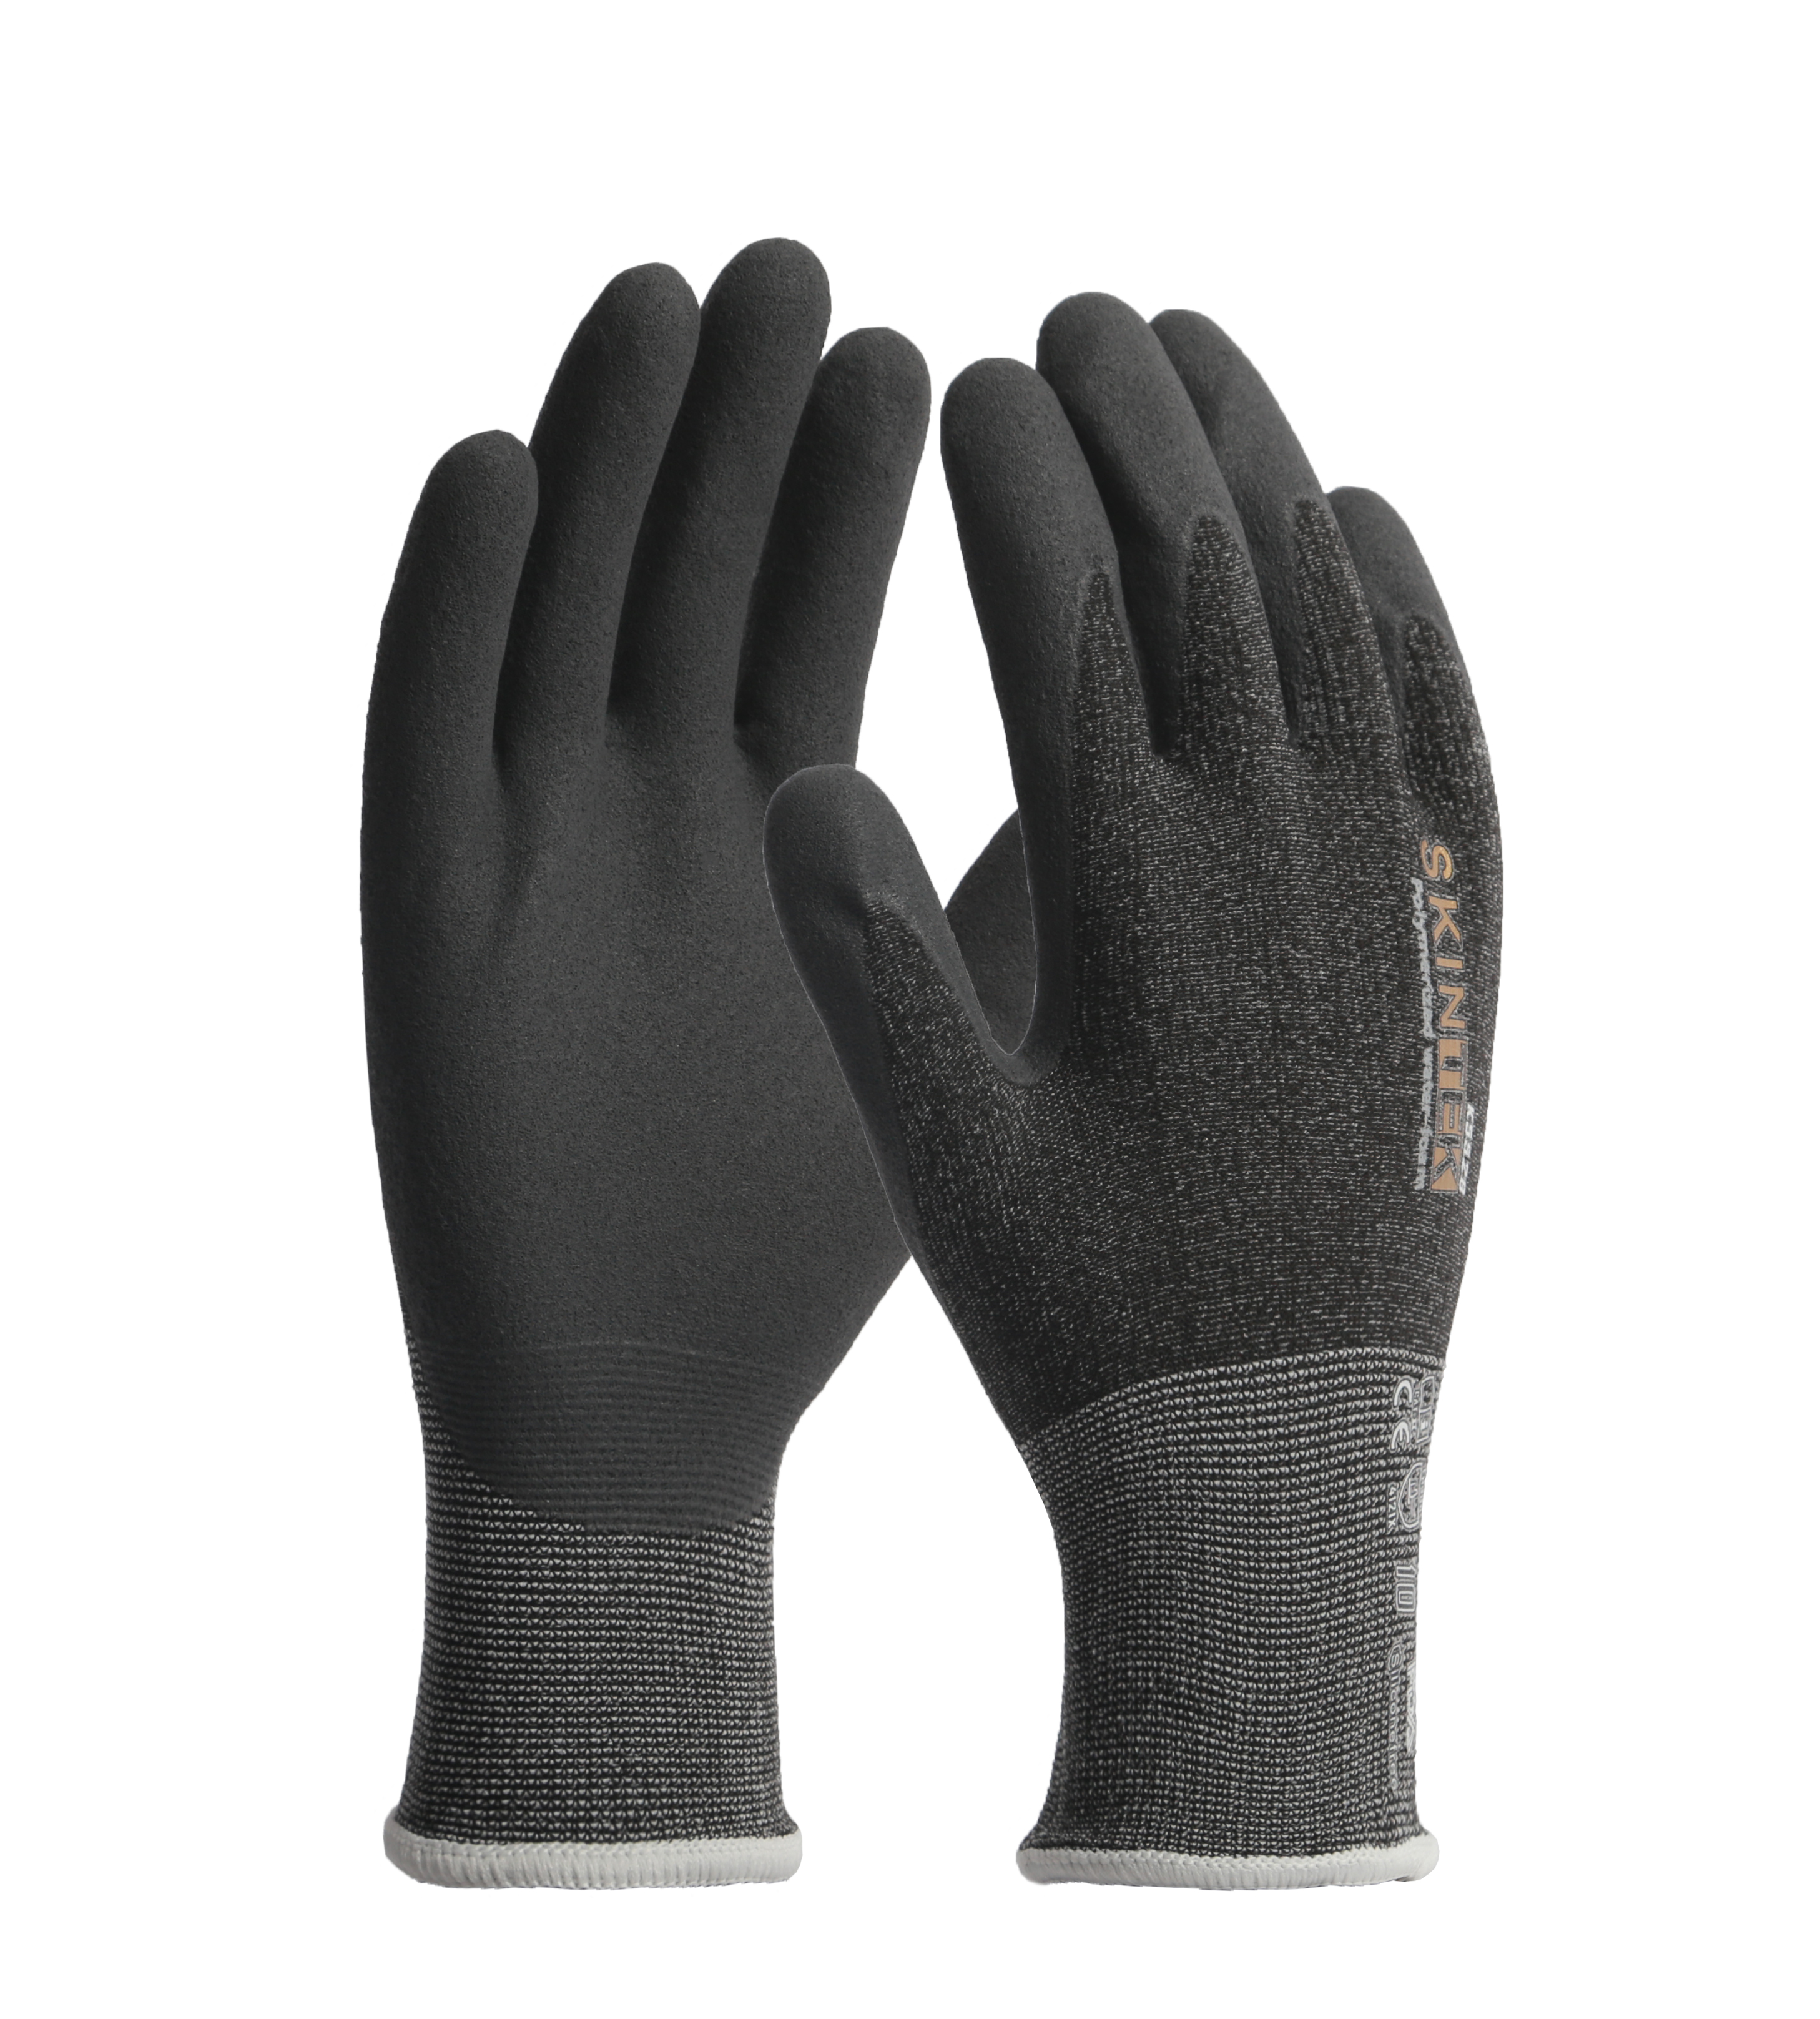 SKINTEK-K552B glove